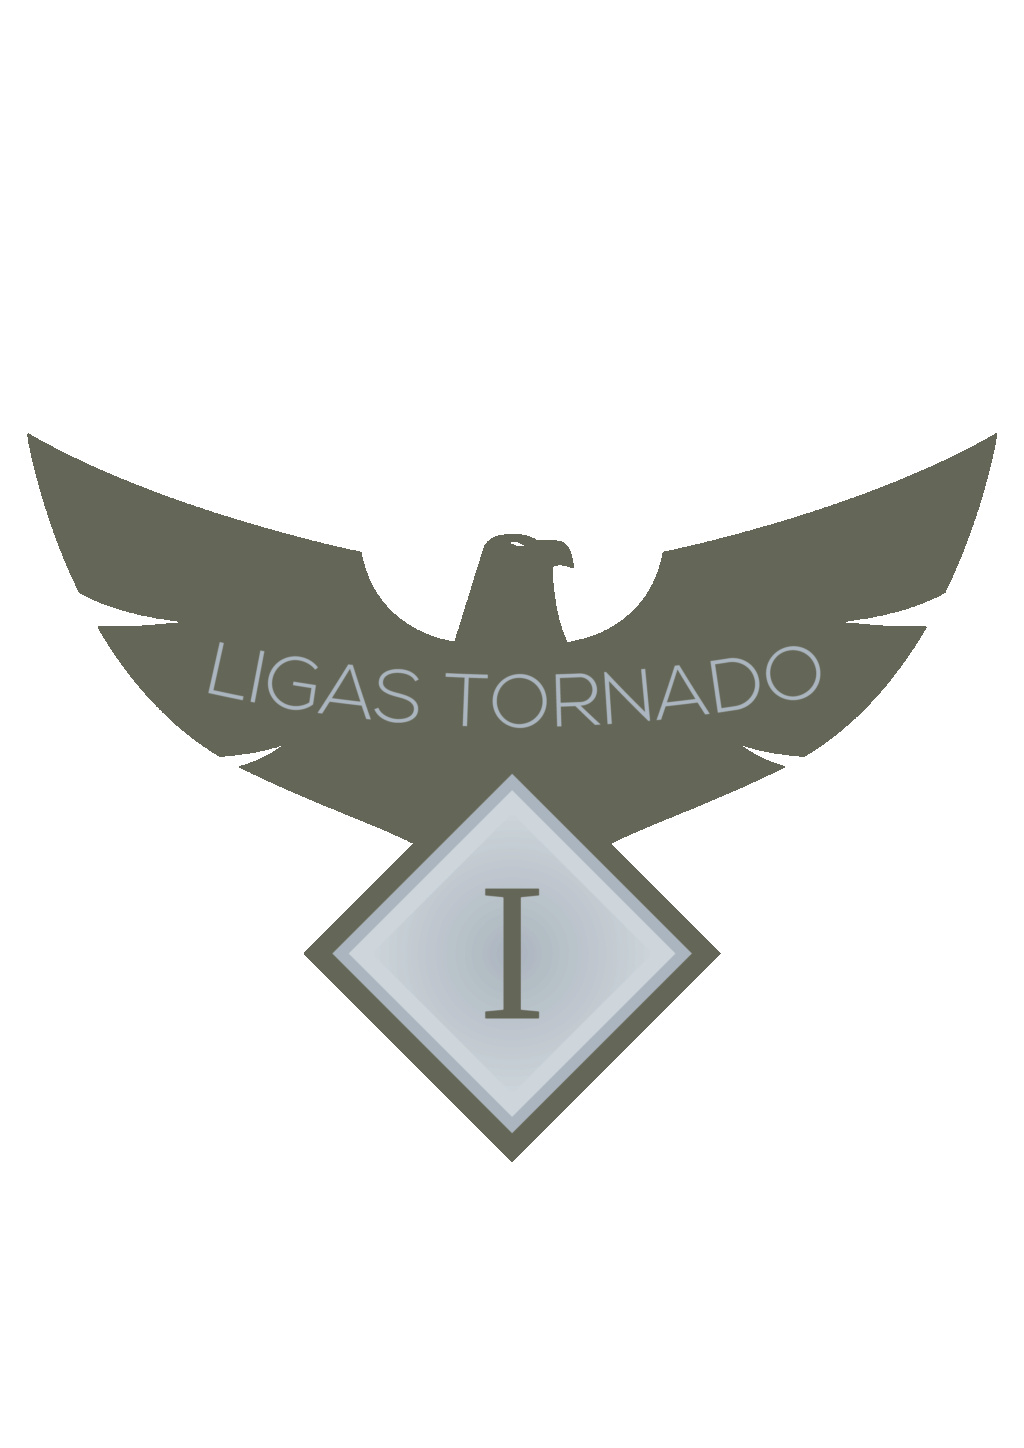 Votación de Propuestas Logo Ligas Tornado Propue13